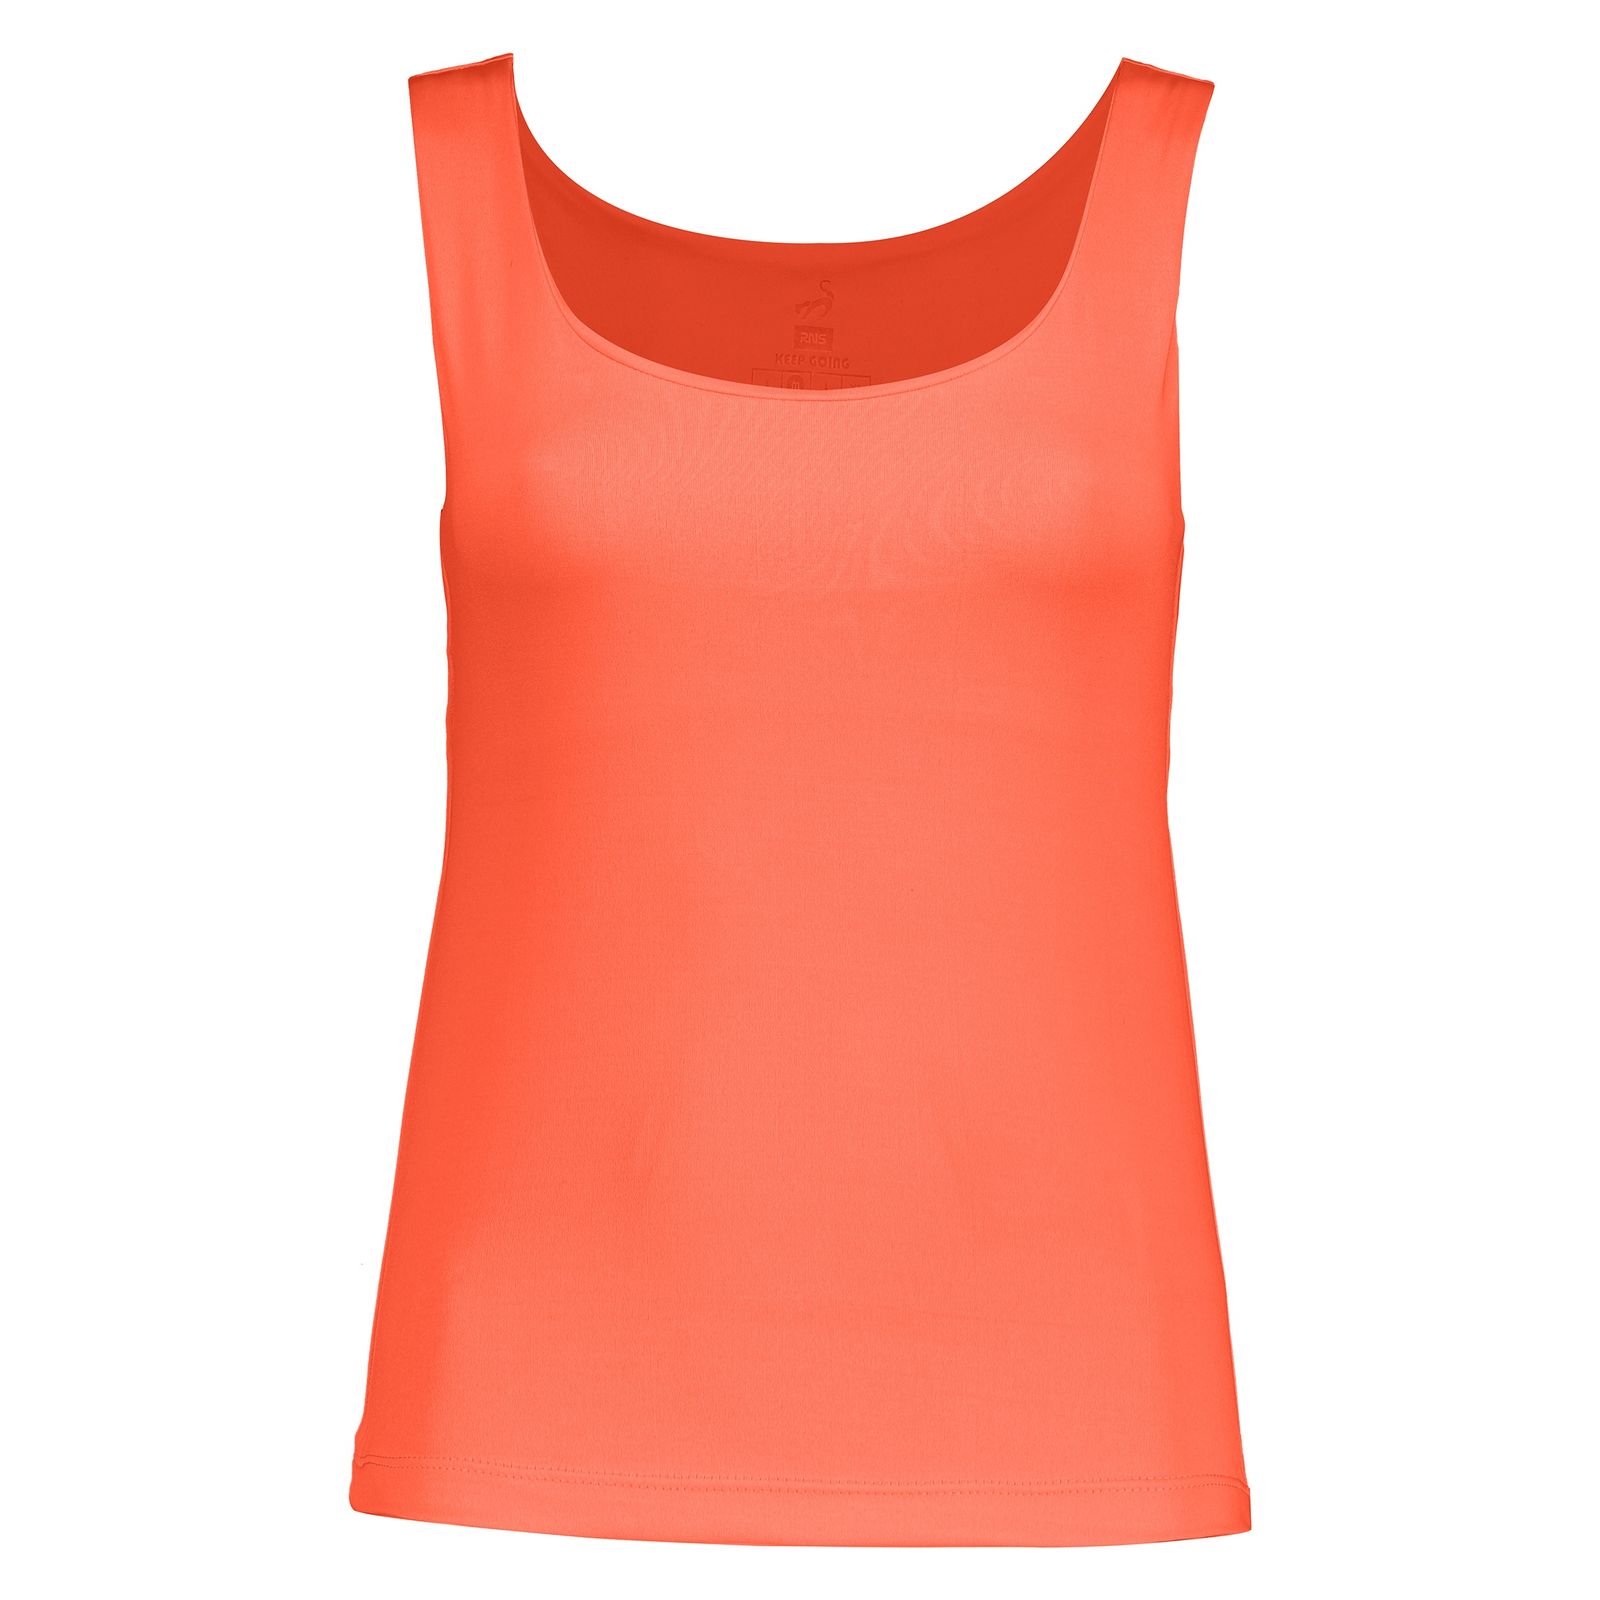 تاپ ورزشی زنانه آر ان اس مدل 2101026-23 - نارنجی - 1